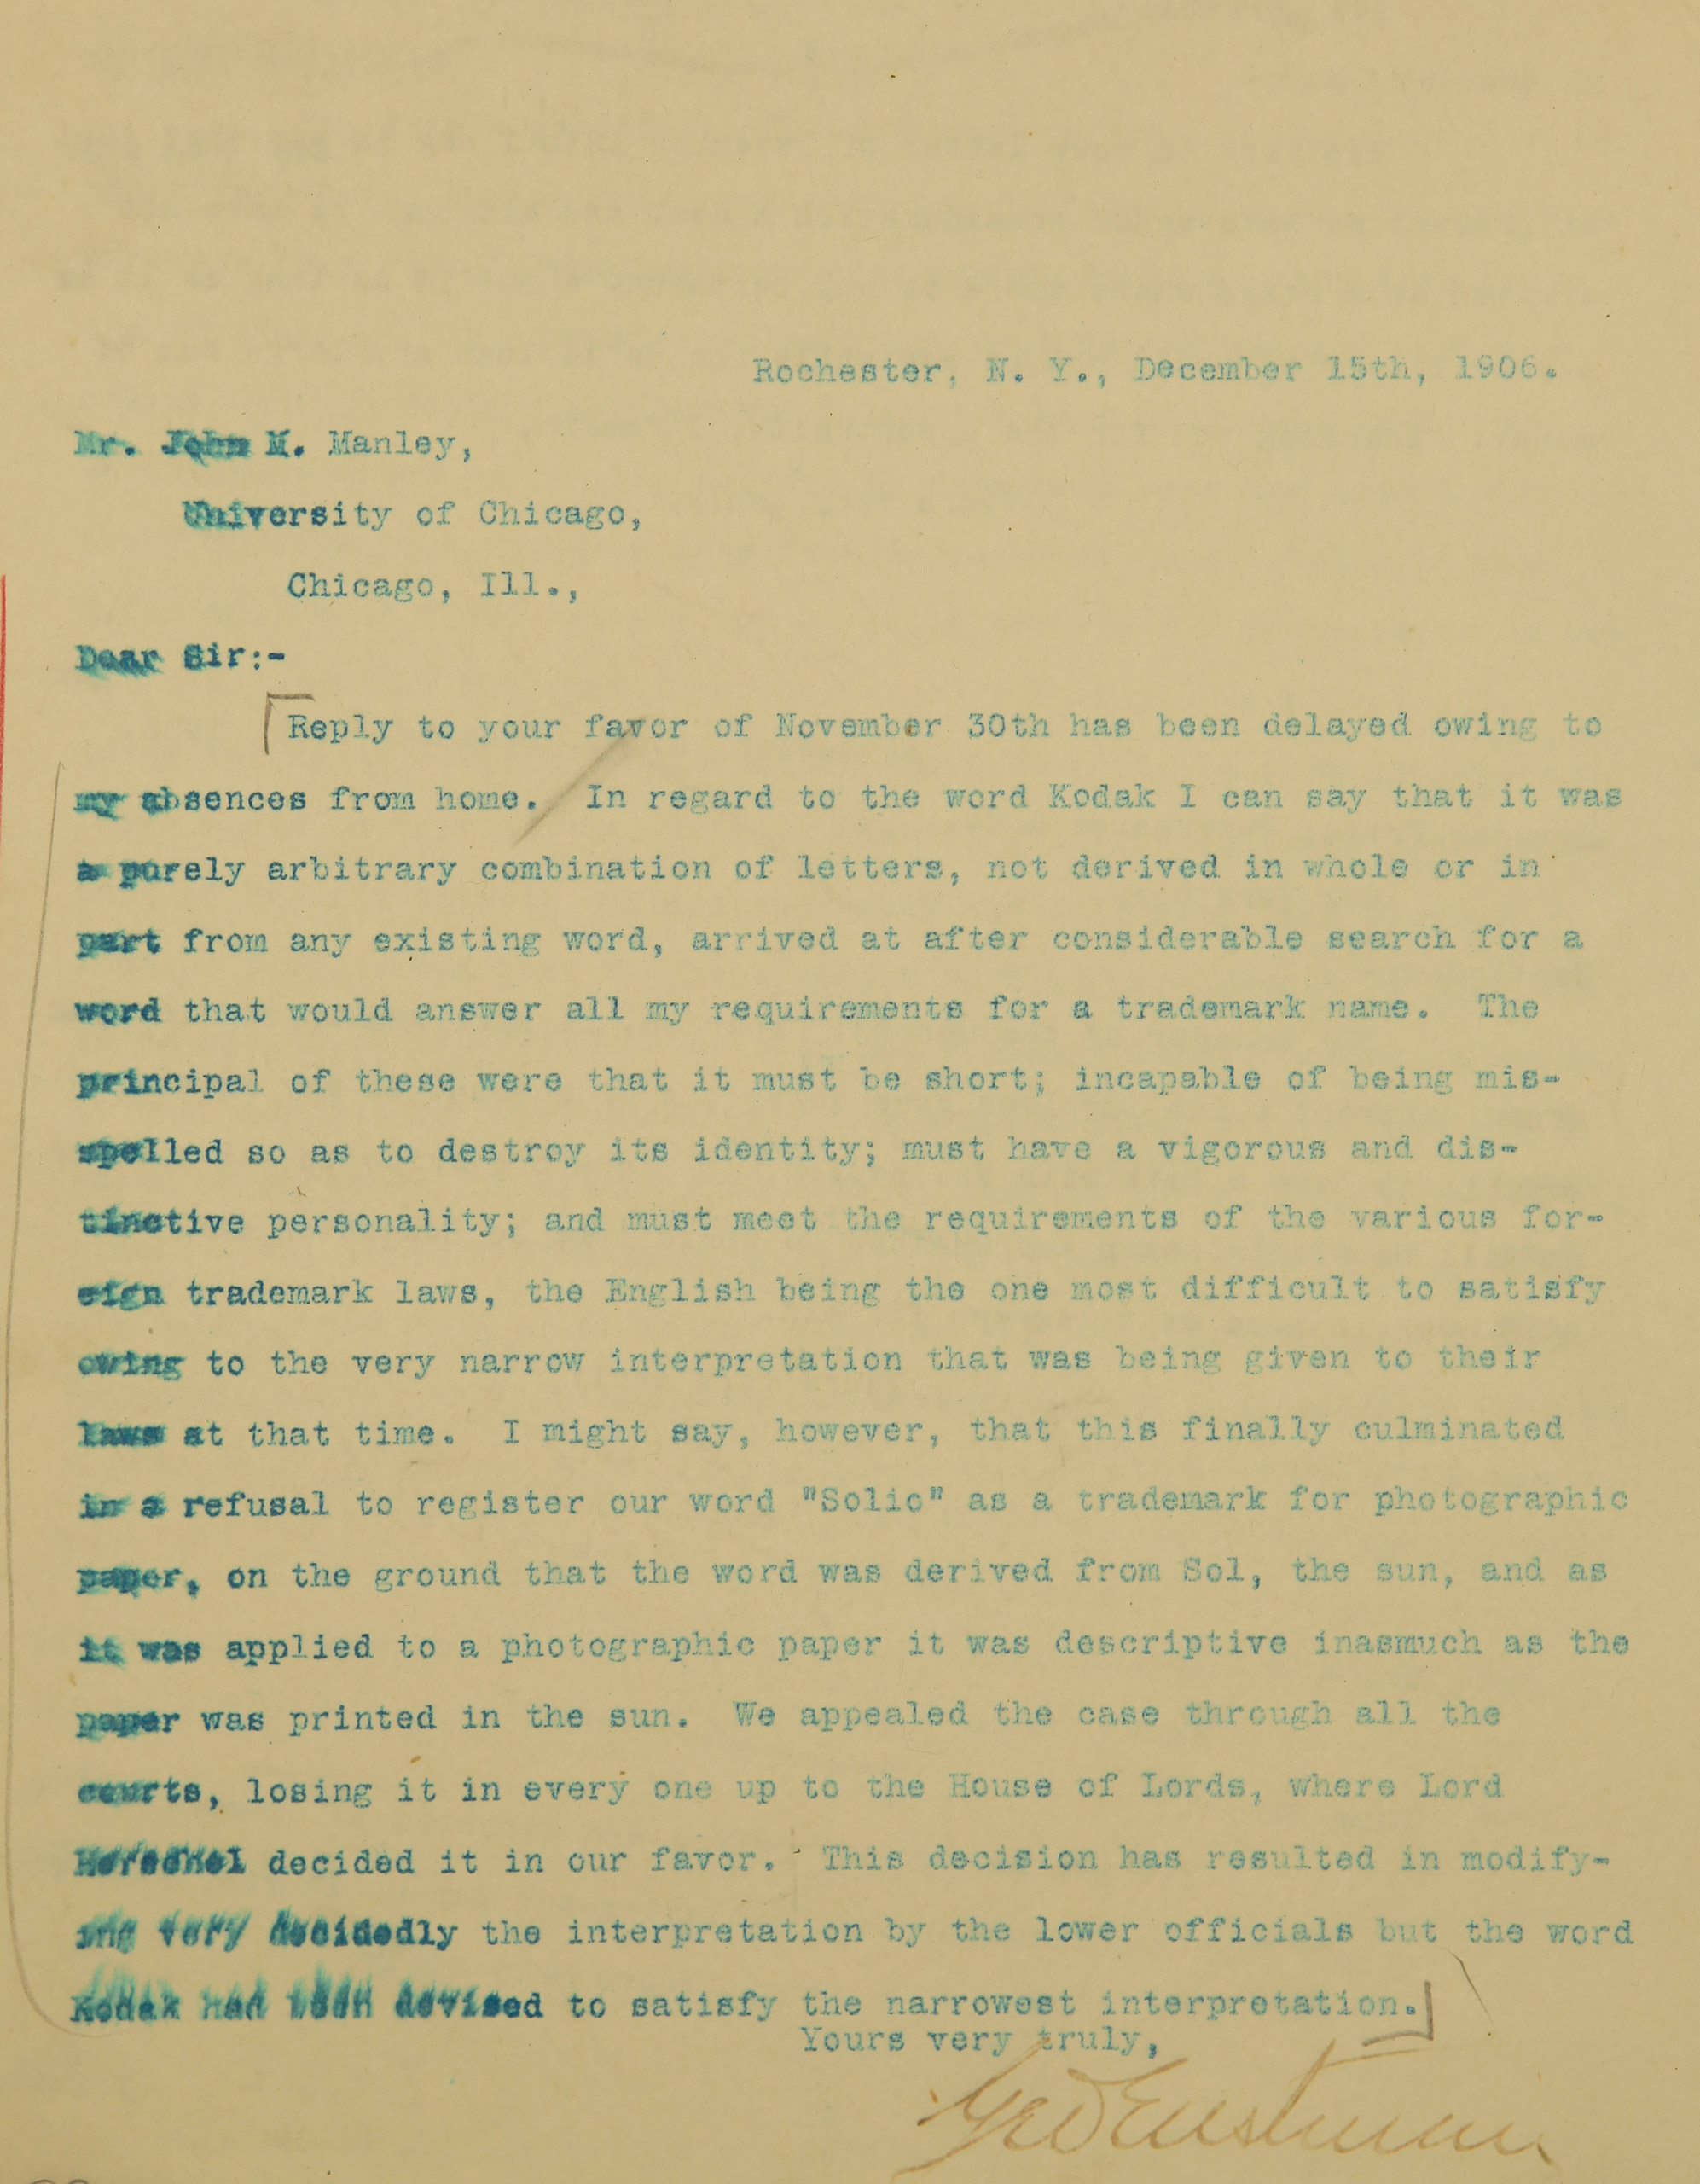 December 15, 1906— Letter from George Eastman to John M. Manley describing trade mark name Kodak.